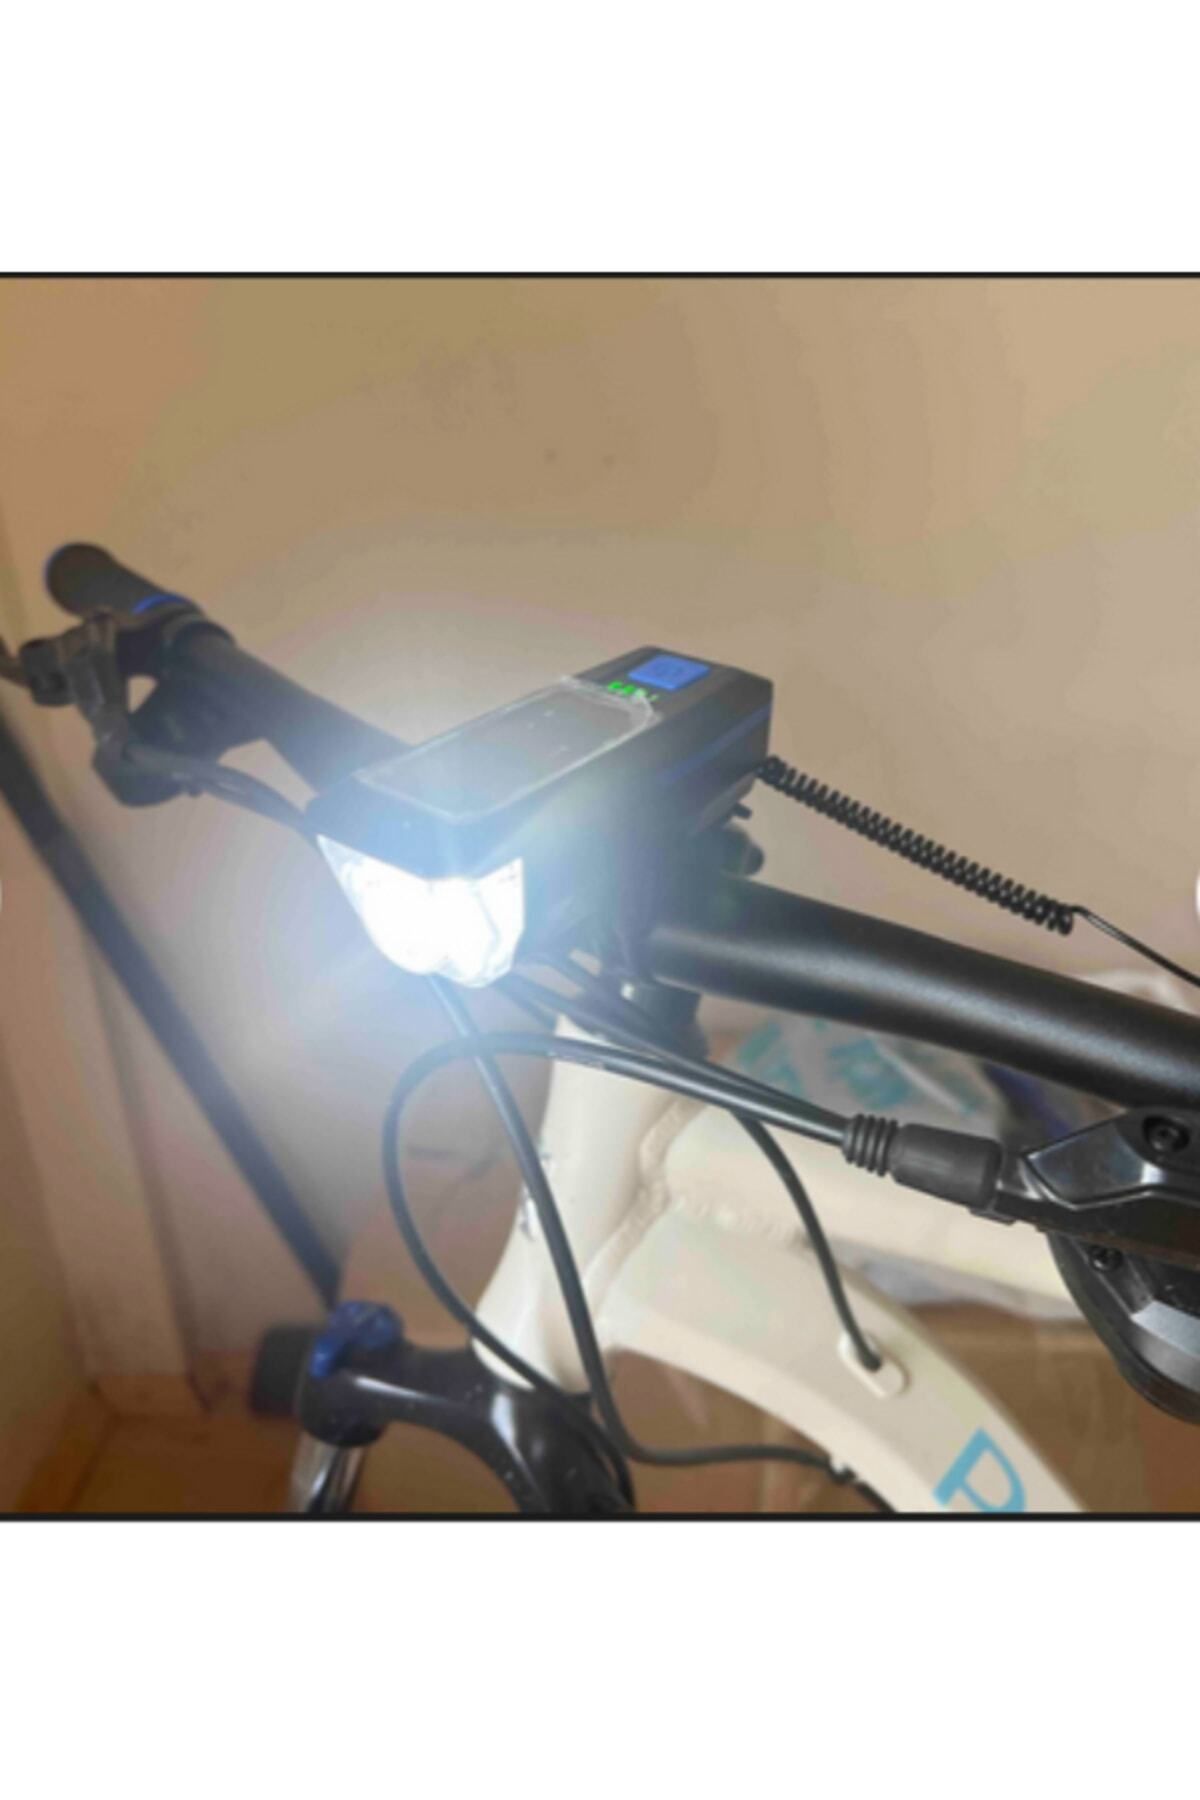 TOYFEST Su Geçirmez Güneş Enerjili Led Işıklı Bisiklet Farı - Kornalı Usb Ile Şarj Edilebilir Fener - 11 Cm